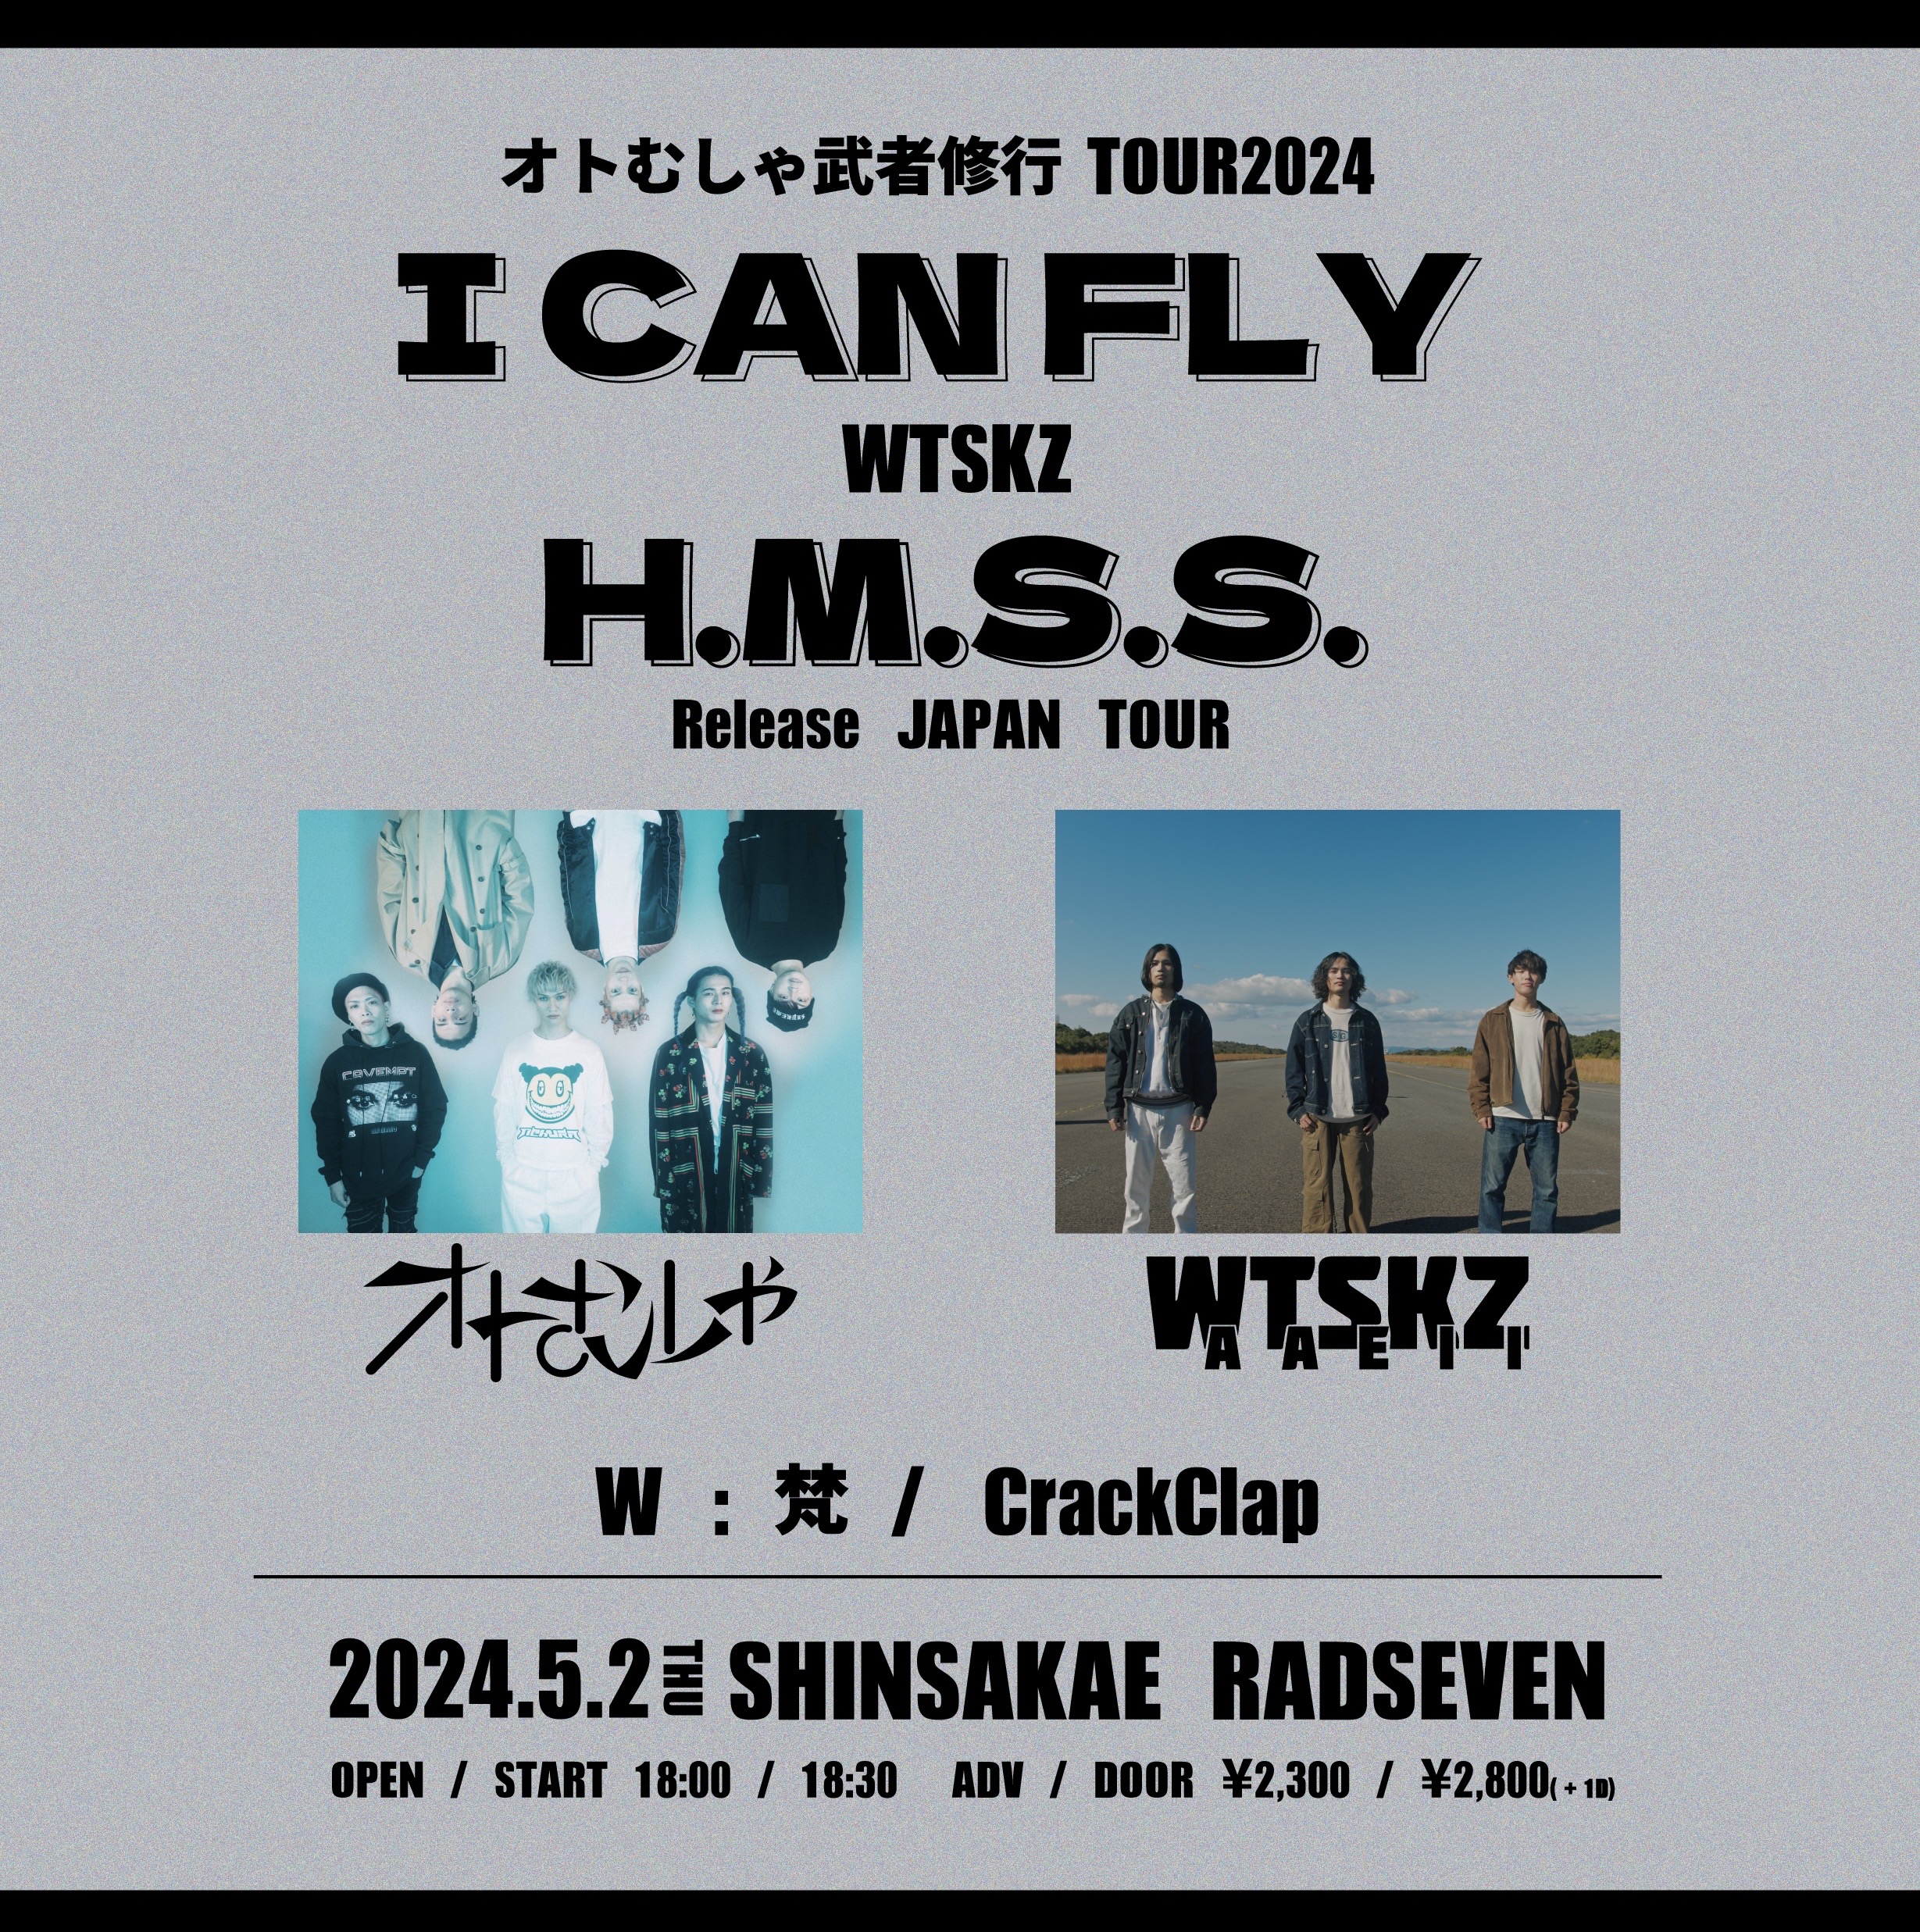 オトむしゃ武者修行TOUR2024「I CAN FLY」 <br>WTSKZ H.M.S.S. Release JAPAN TOUR